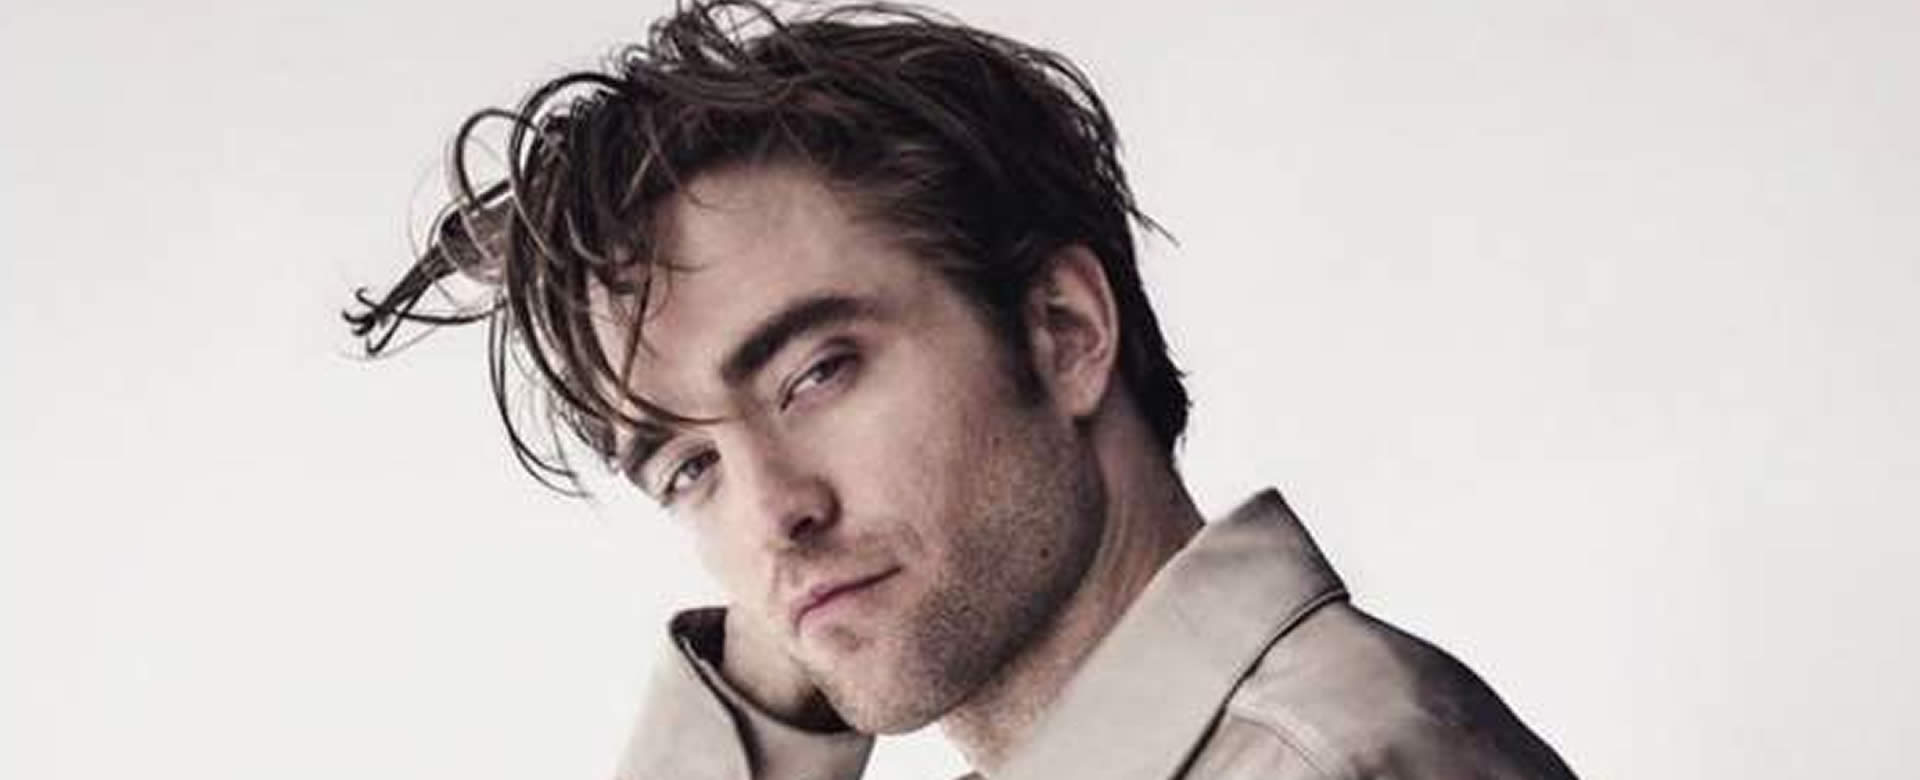 El COVID-19 llegó a Batman, Robert Pattinson da positivo al virus